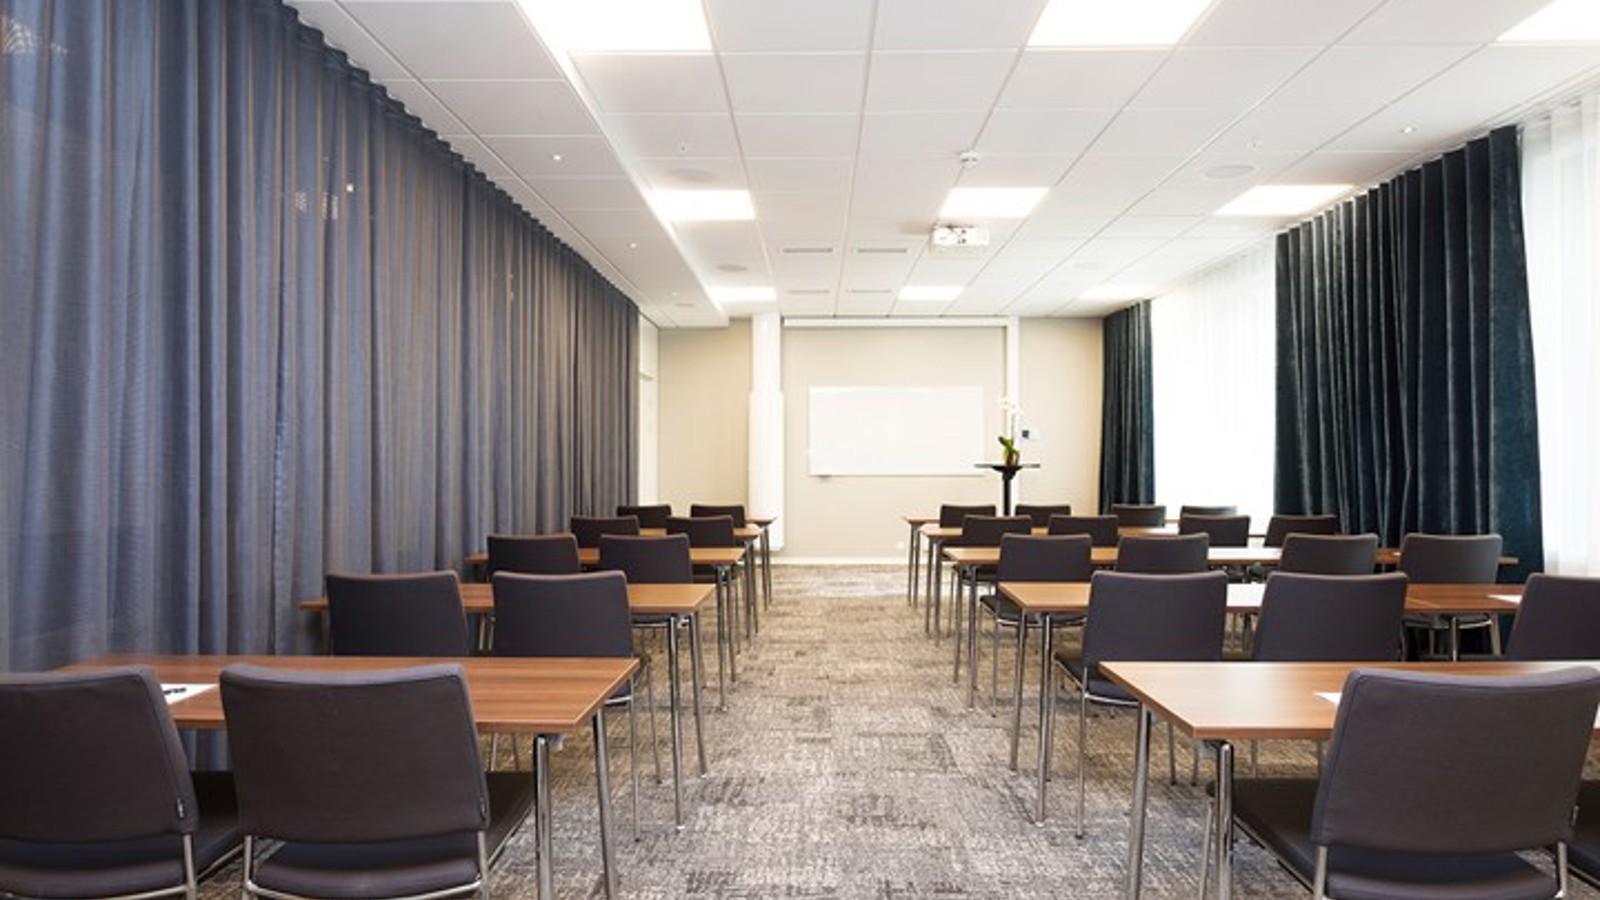 Konferensrum med skolsittning, grå stolar, grått golv och grå draperier